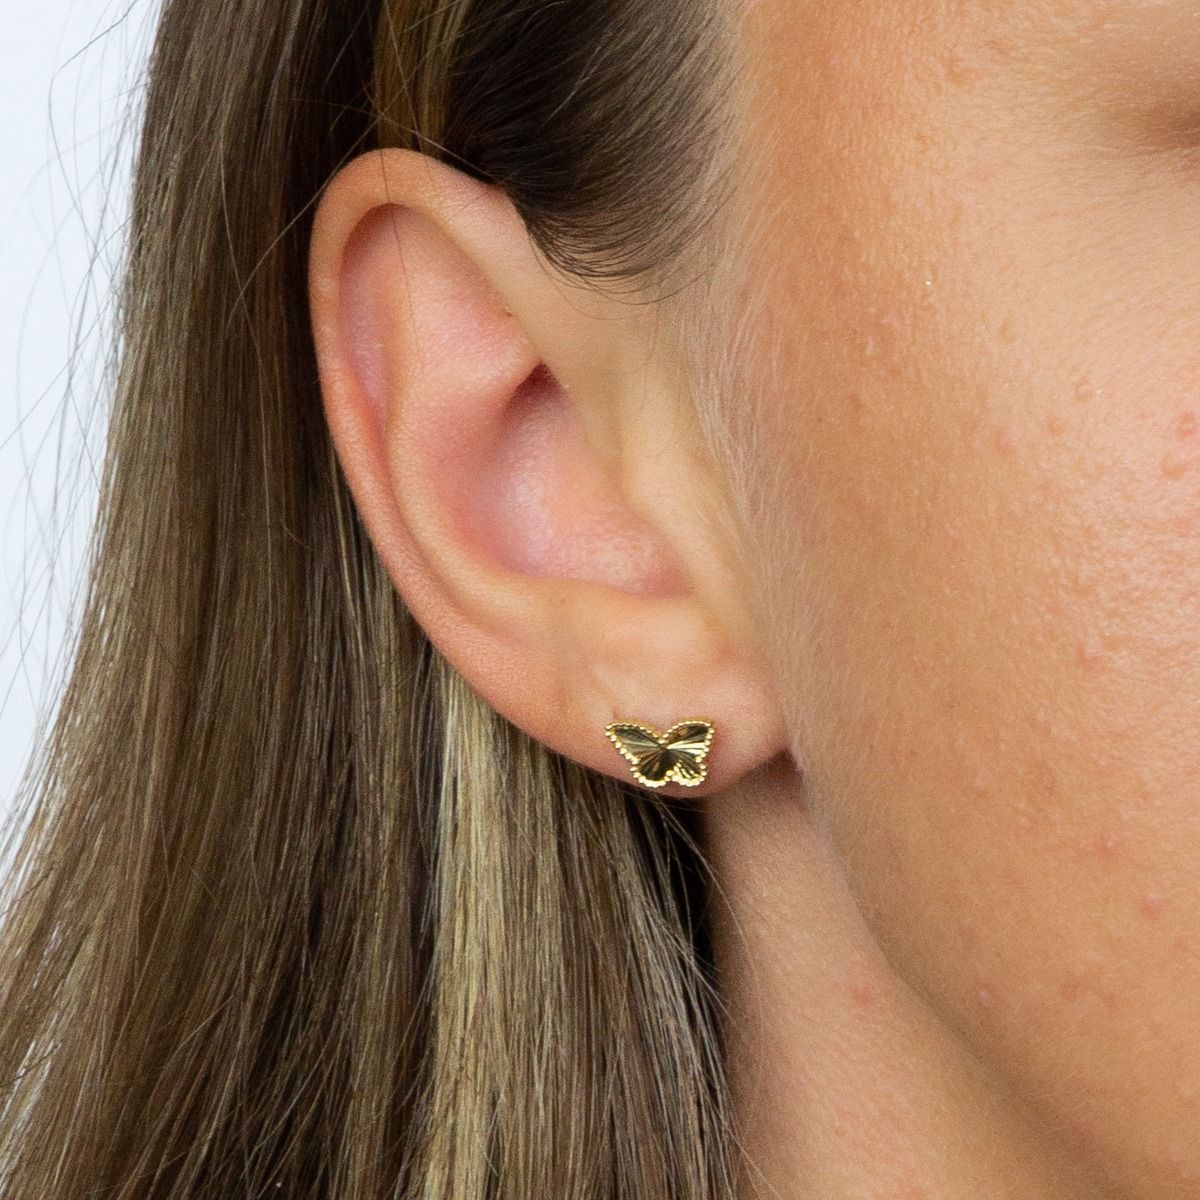 Diamond-Cut Gold Butterfly Stud Earrings